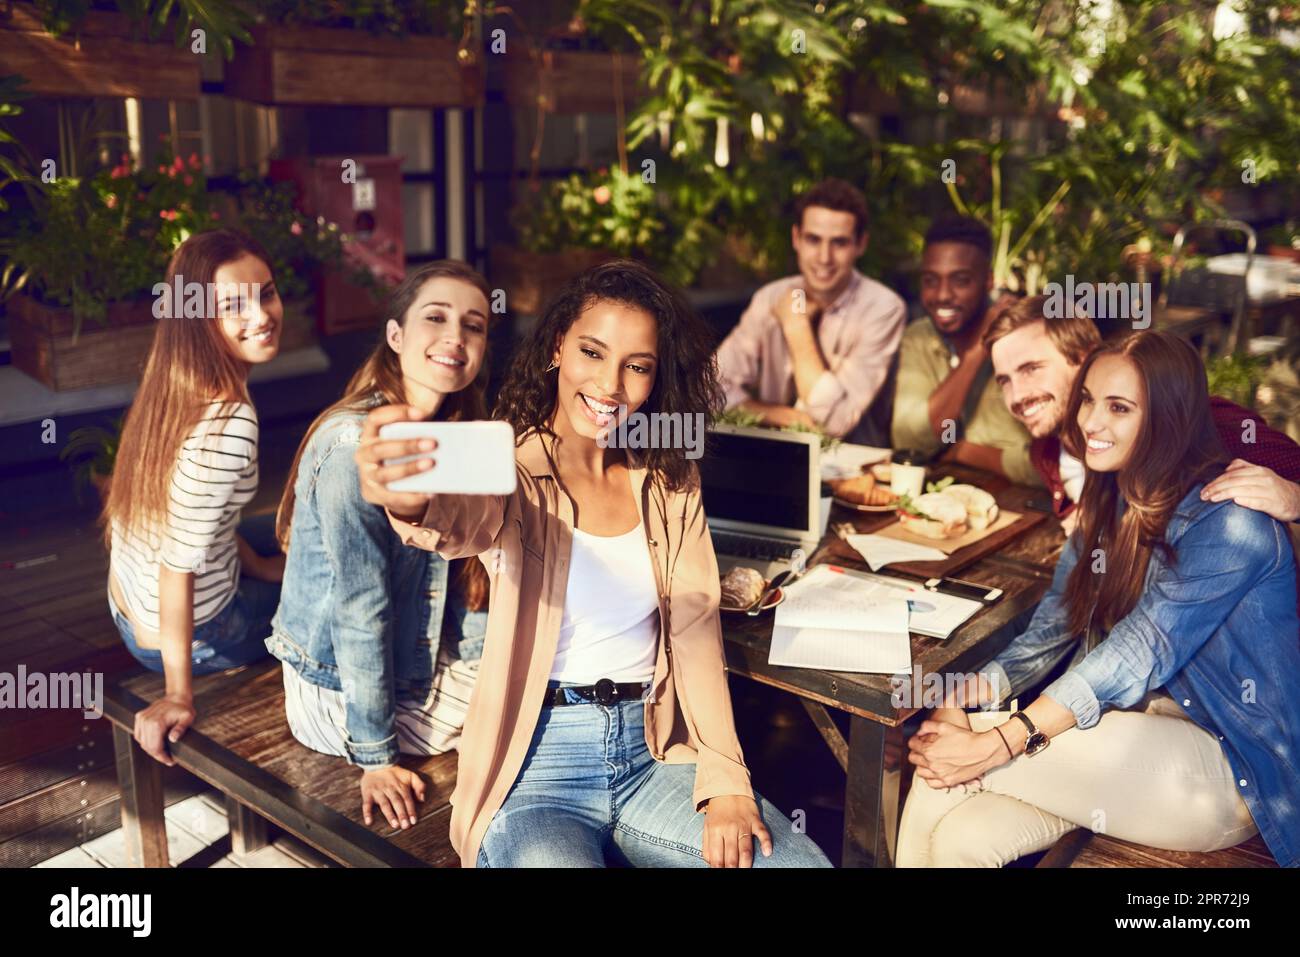 Im proprio qui per i selfie. Scatto corto di una giovane donna attraente che prende un selfie mentre fuori per pranzo con gli amici. Foto Stock